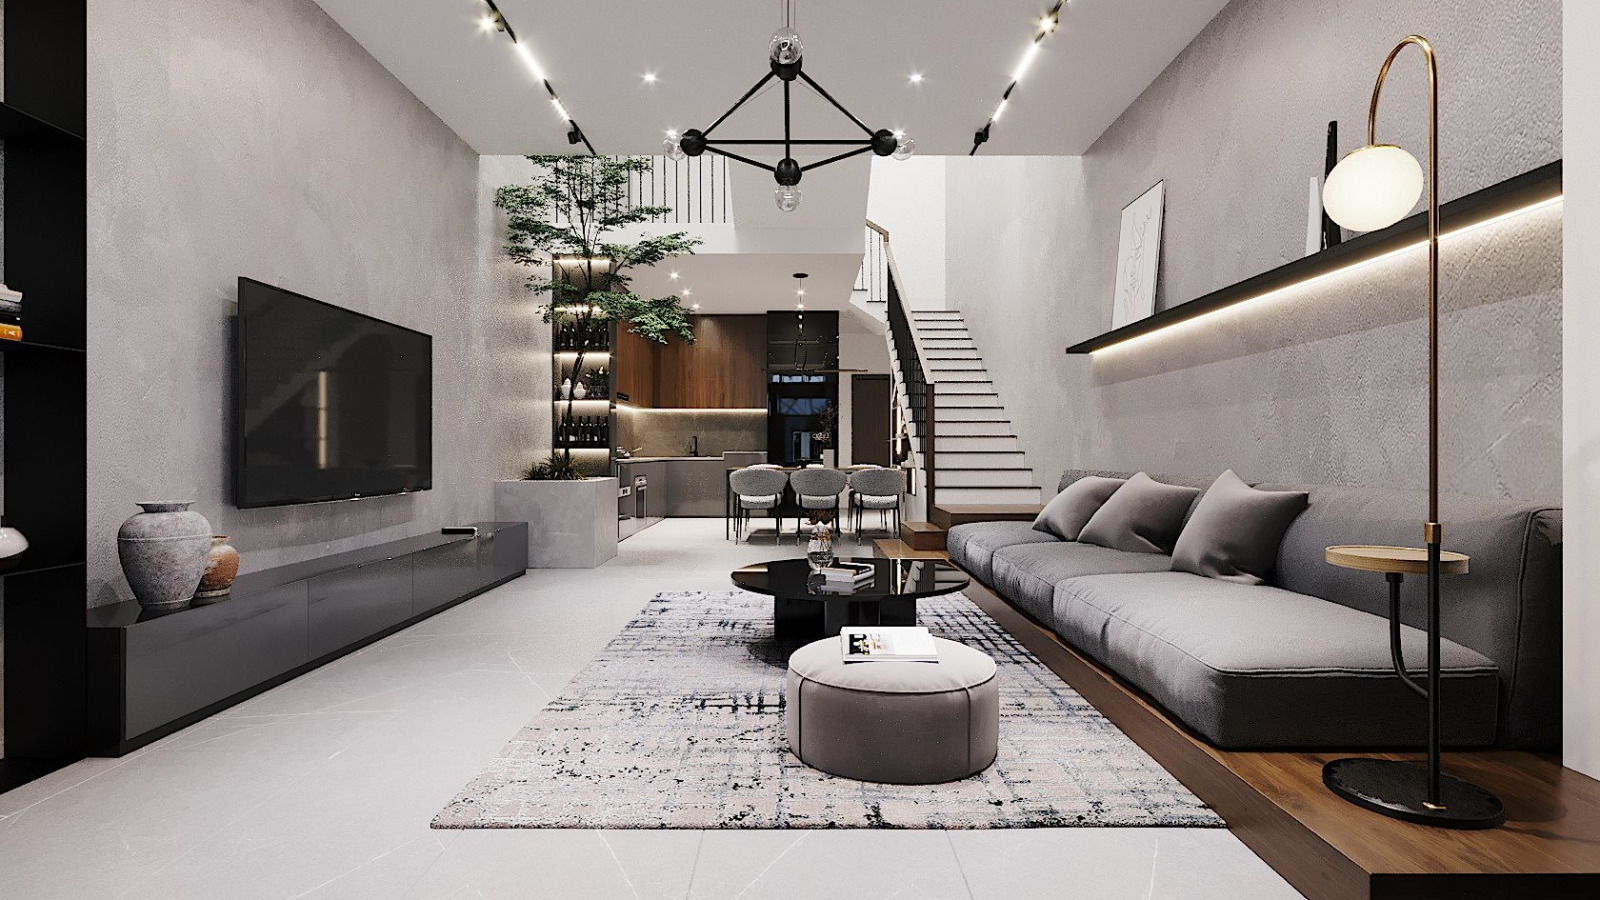 Phong cách nội thất tối giản cho không gian sống